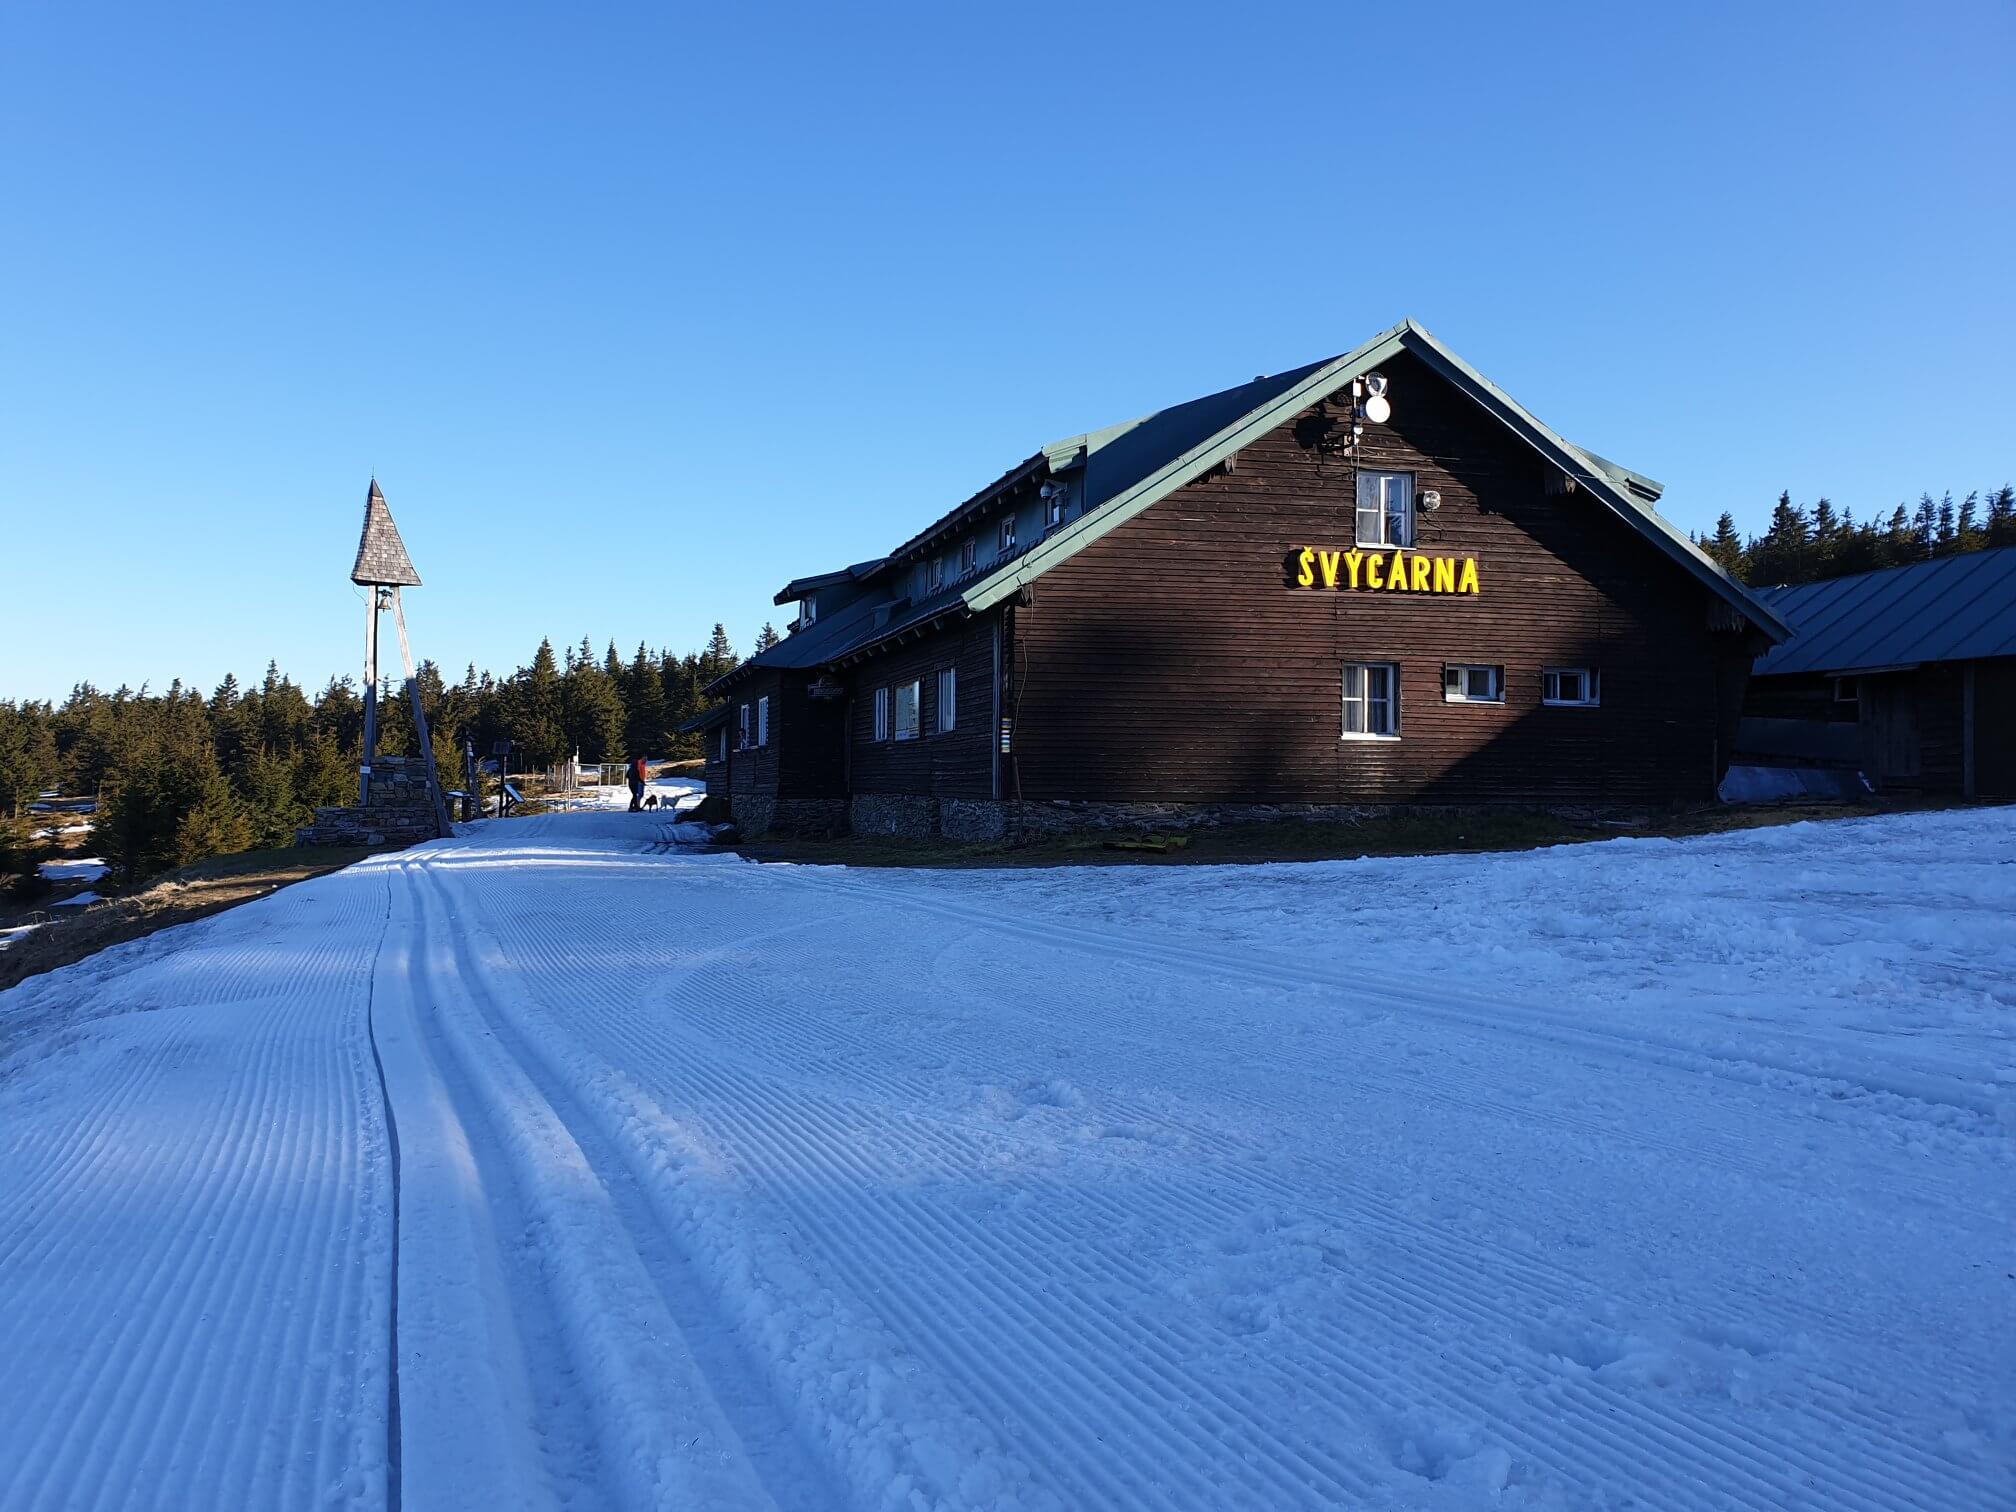 Ski areál Praděd